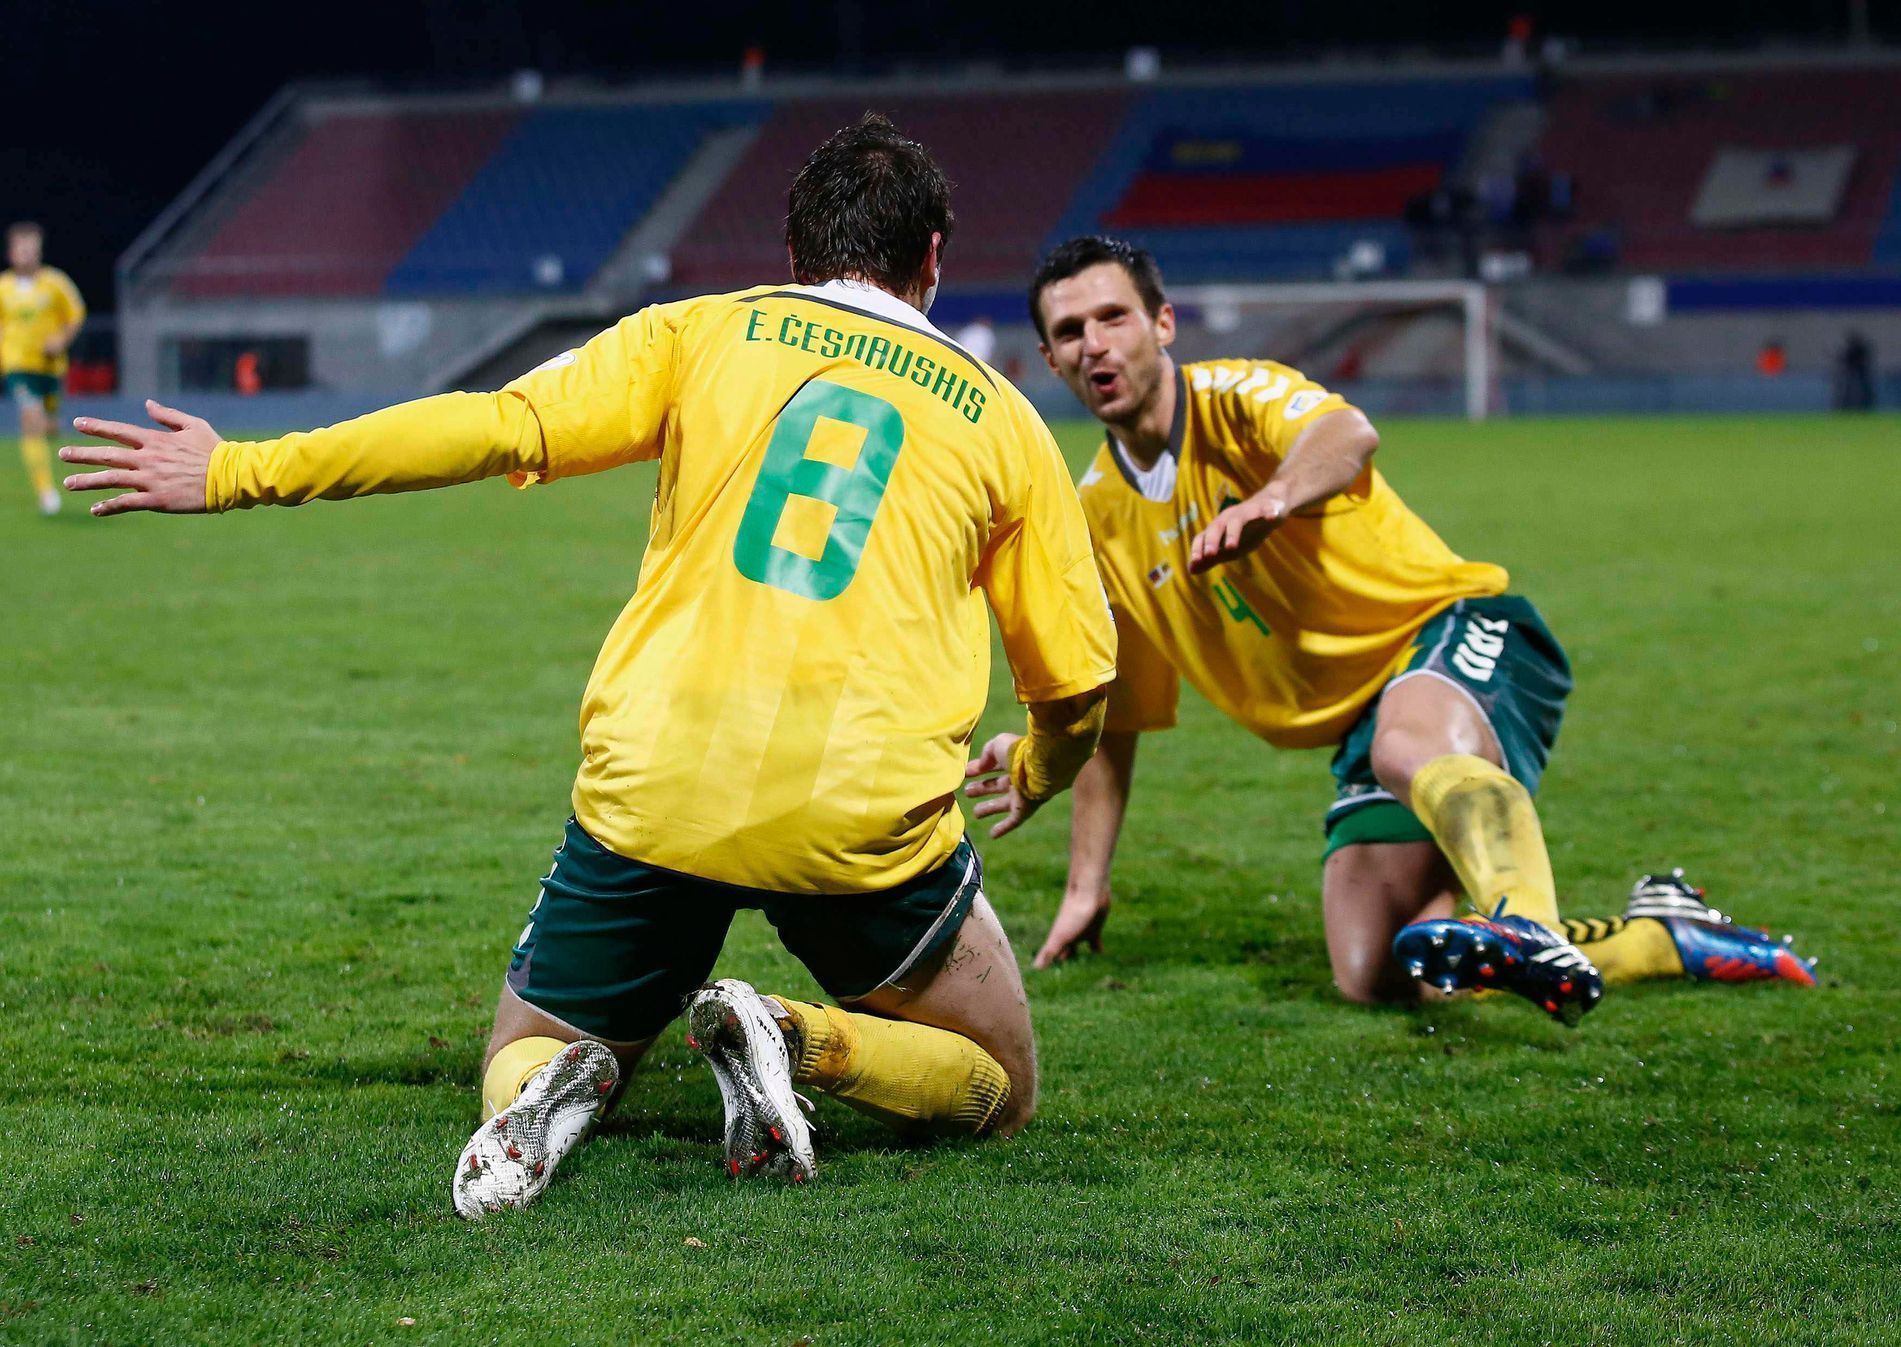 Litevští fotbalisté Edgaras Česnauskis a Tadas Kijanskas slaví gól v kvalifikaci na MS 2014 proti Lichtenštejnsku.